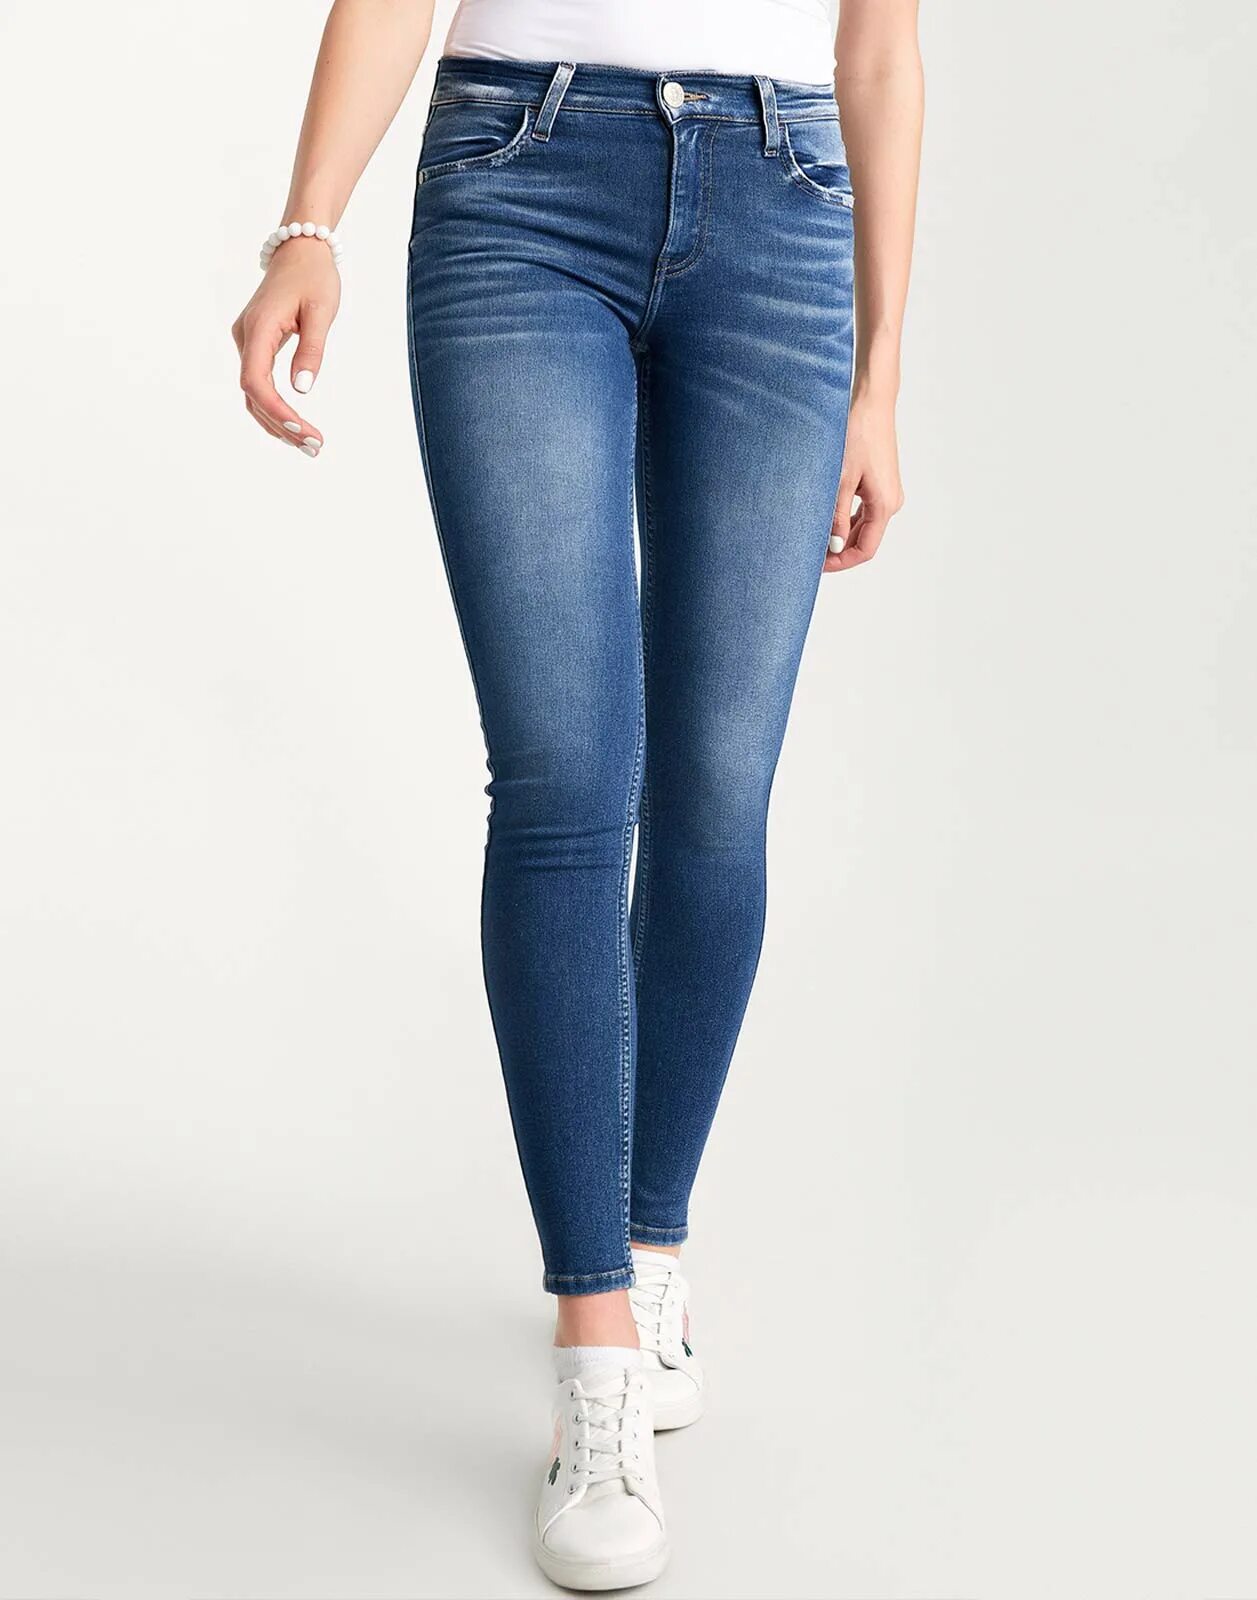 Облегчающие джинсы. Обтягивающие джинсы. Облегающие джинсы женские. Обтягивающие джинсы женские. Джинсы в обтяжку женские.